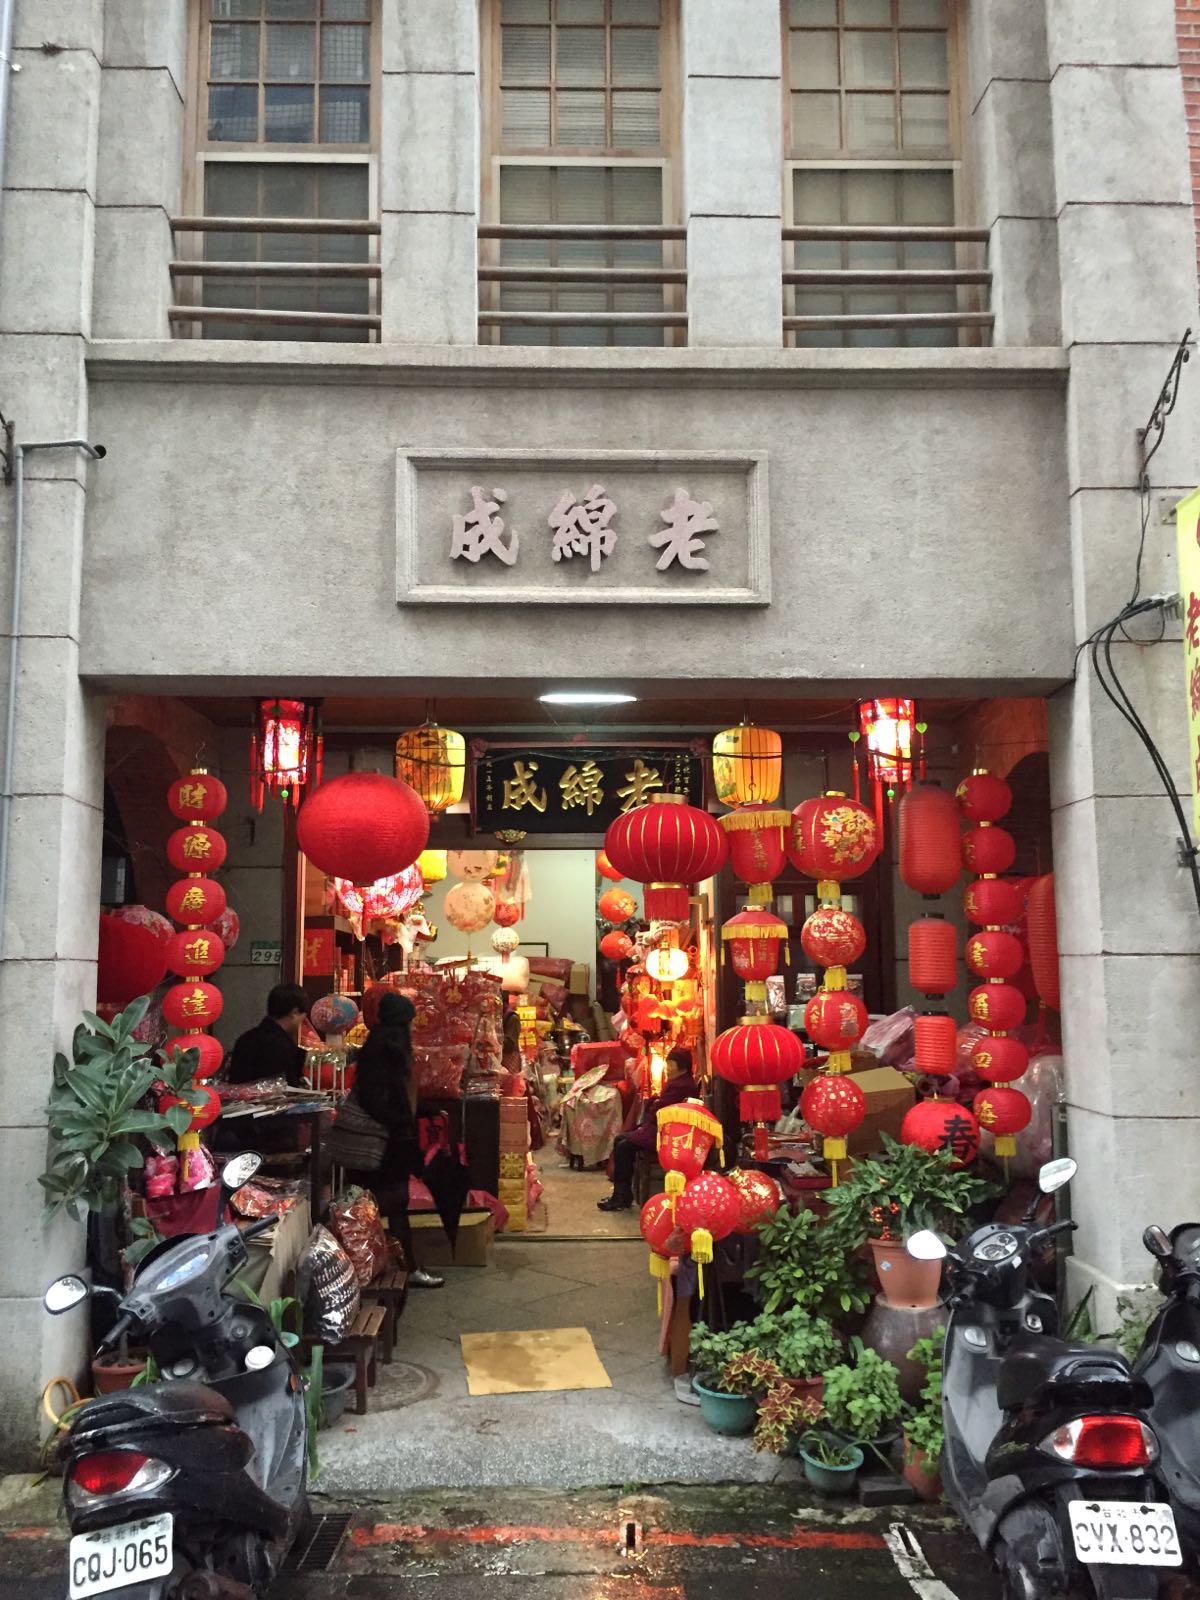 很有年味，台北的商业街比上海热闹很多，可能是因为没有淘宝的原因吧，商店